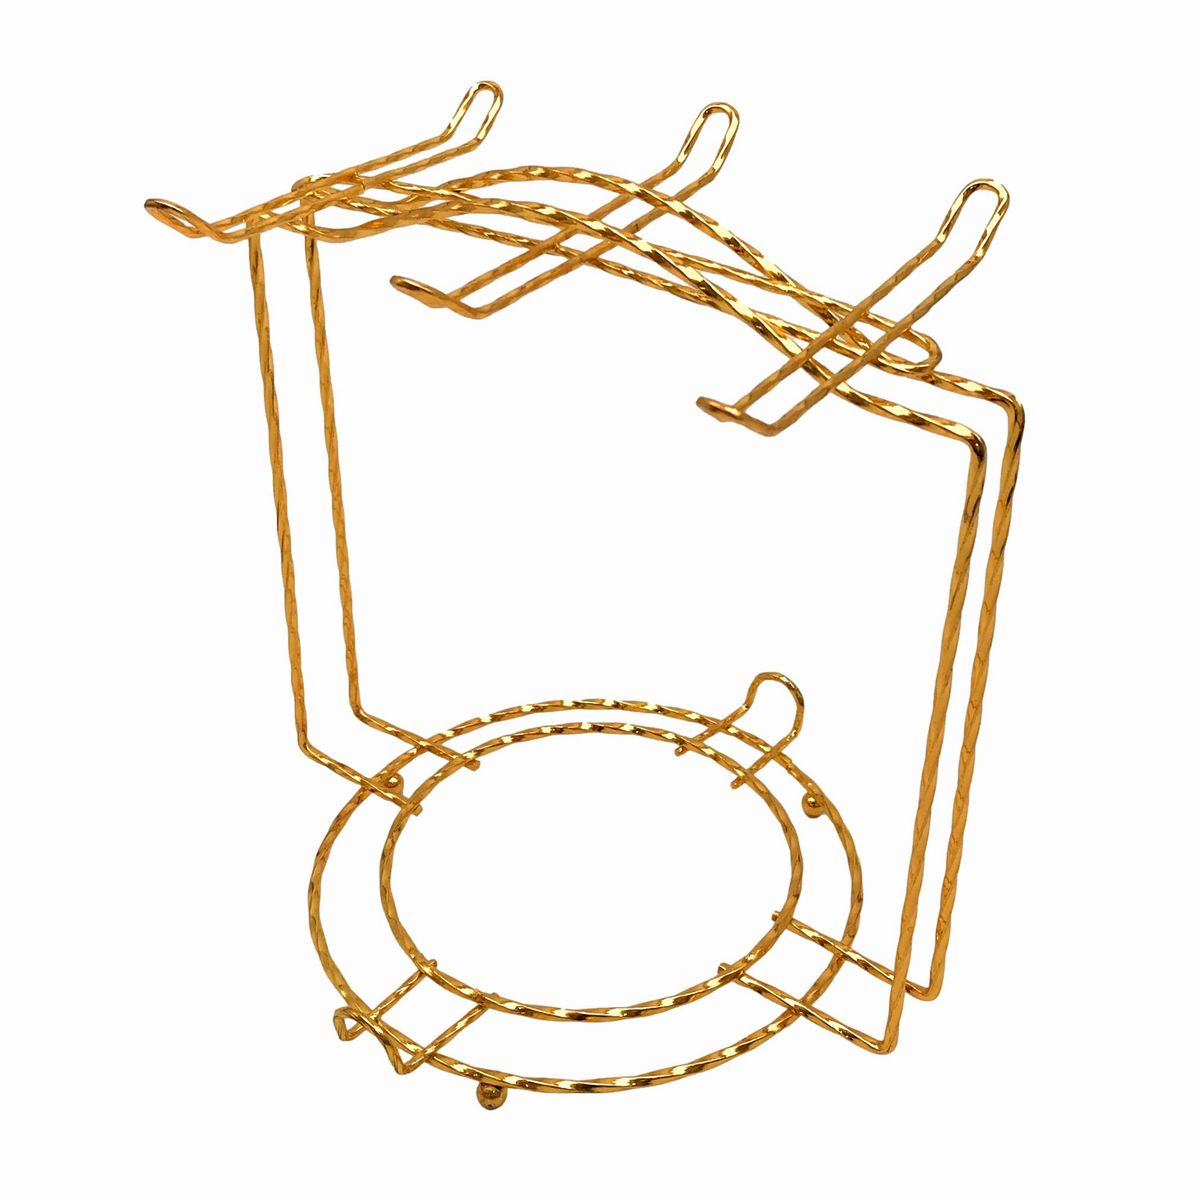 カップスタンド コーヒーカップ ソーサー用 ヨーロピアン風 角型フレーム ゴールドカラー 金属製 6個用